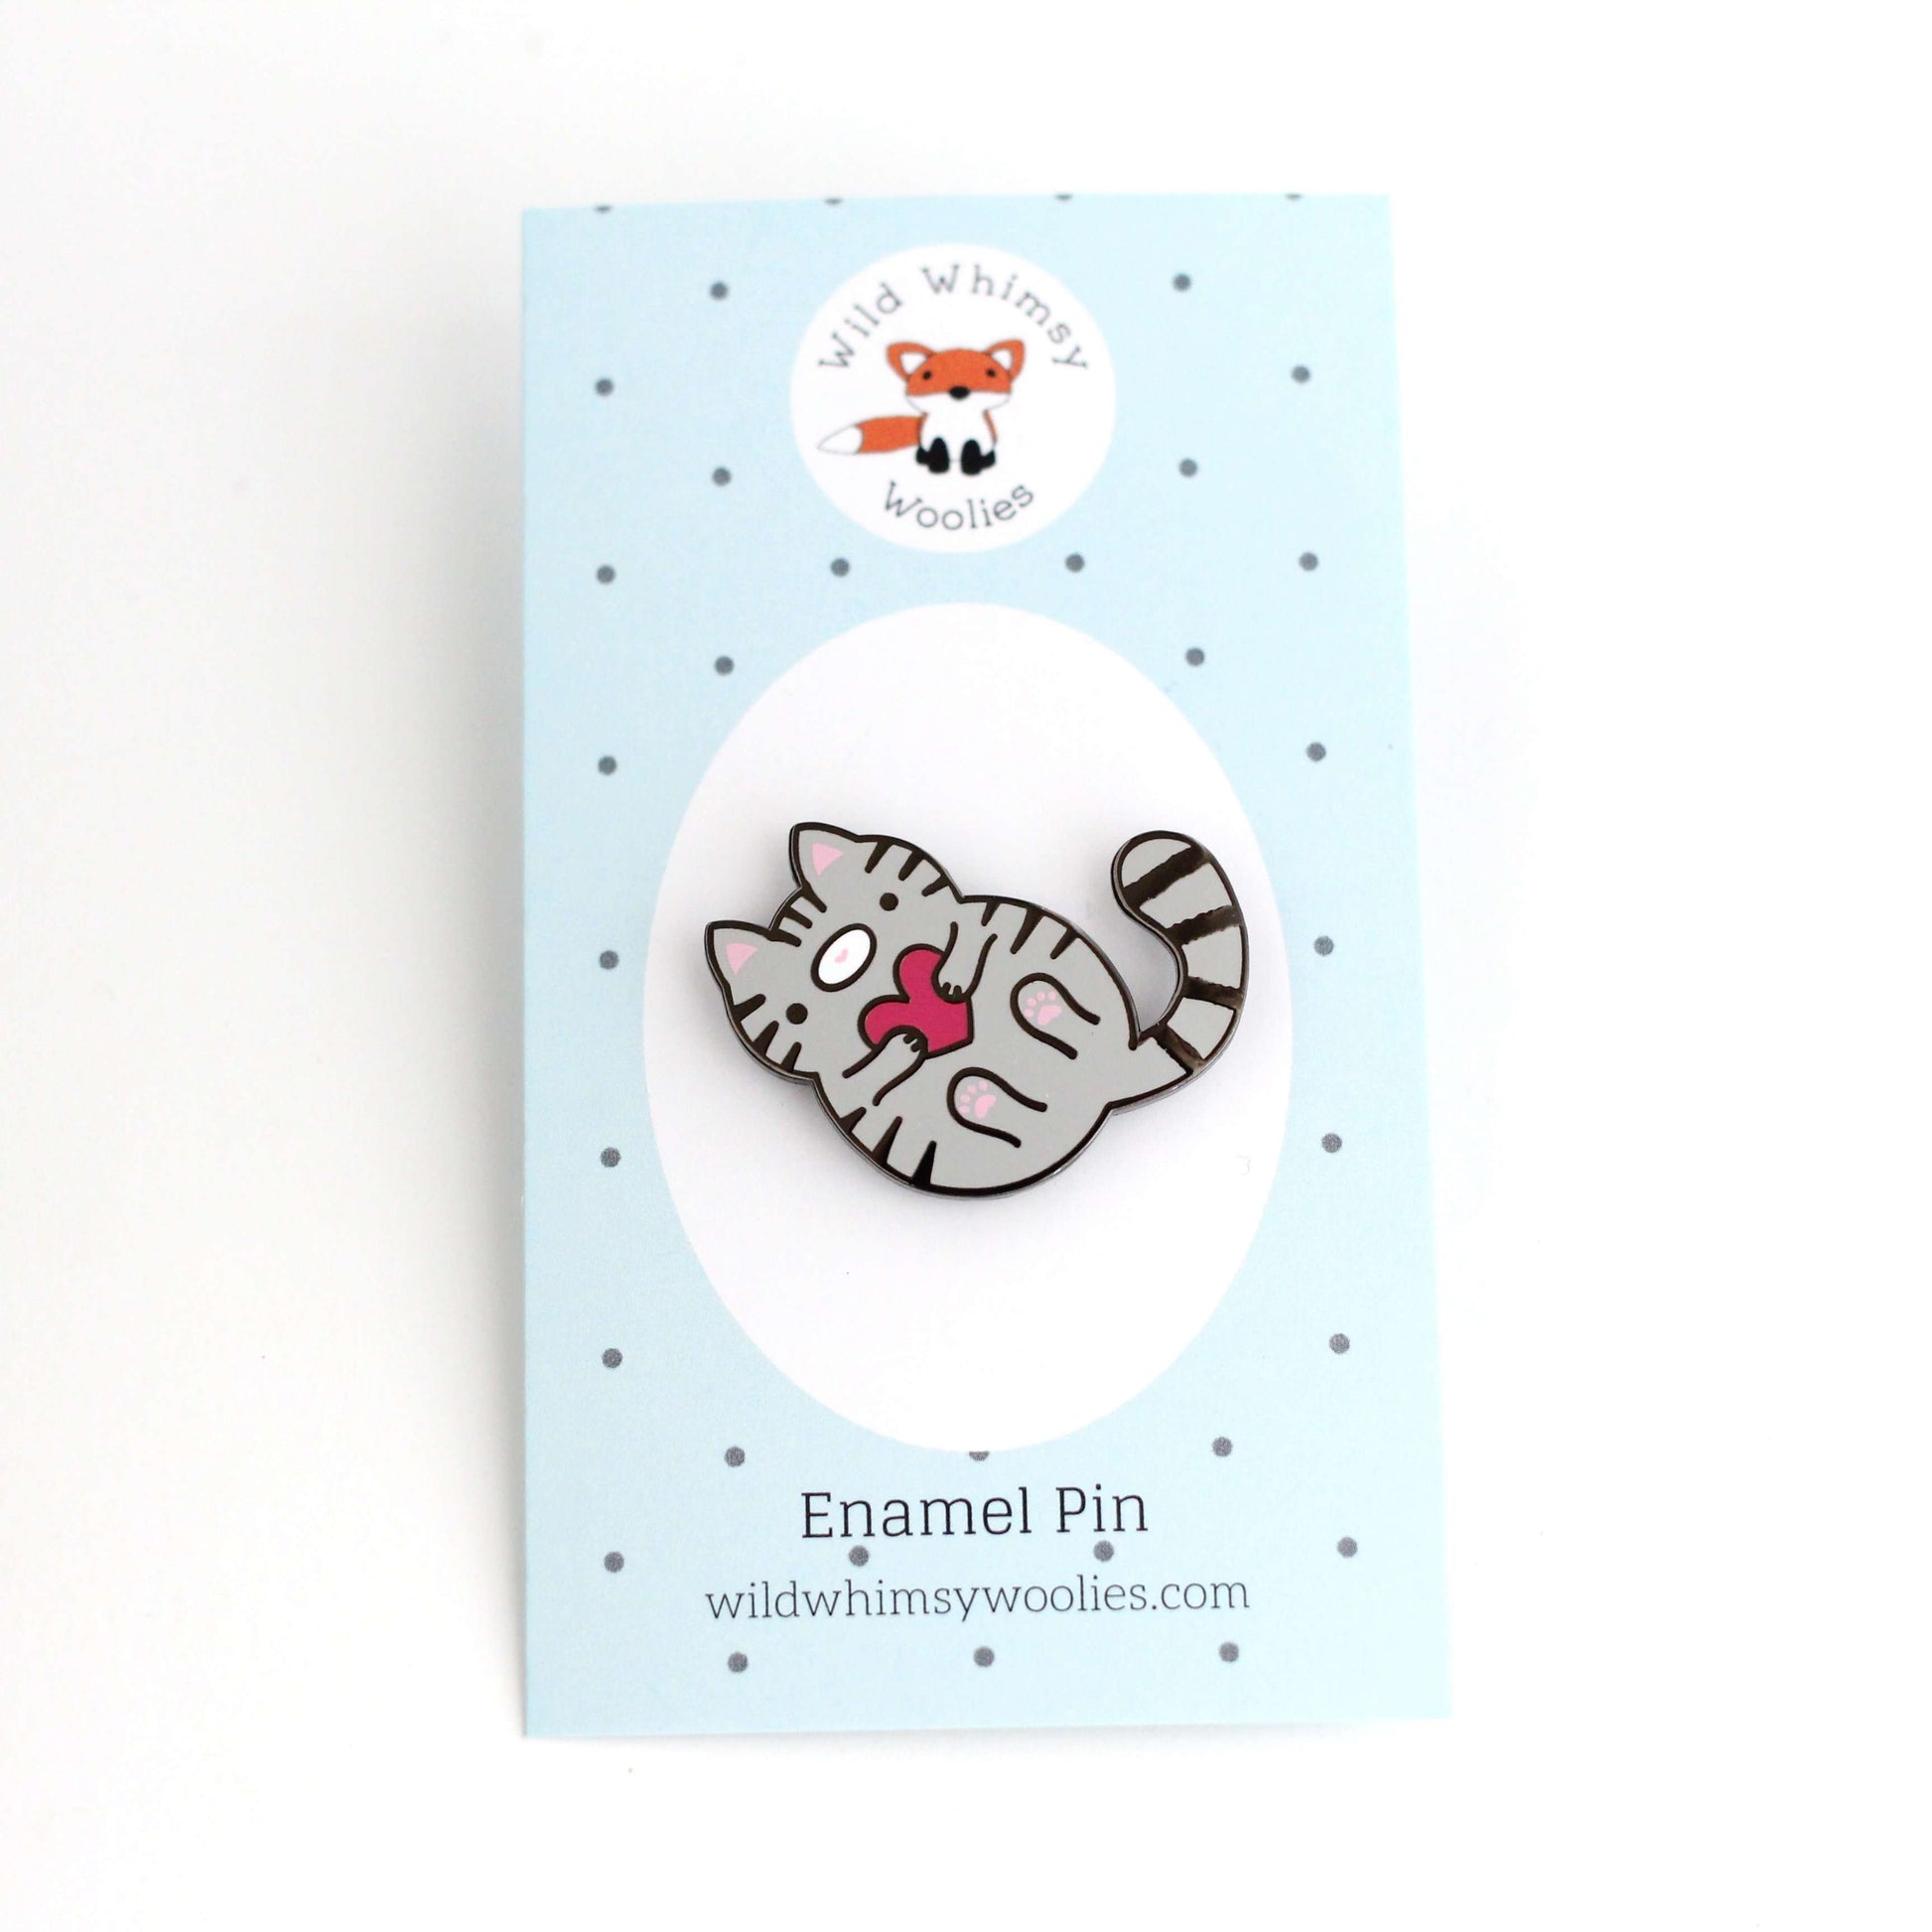 Grey Tabby Cat Enamel Pin - Cat Gift - Hard Enamel Pin by Wild Whimsy Woolies